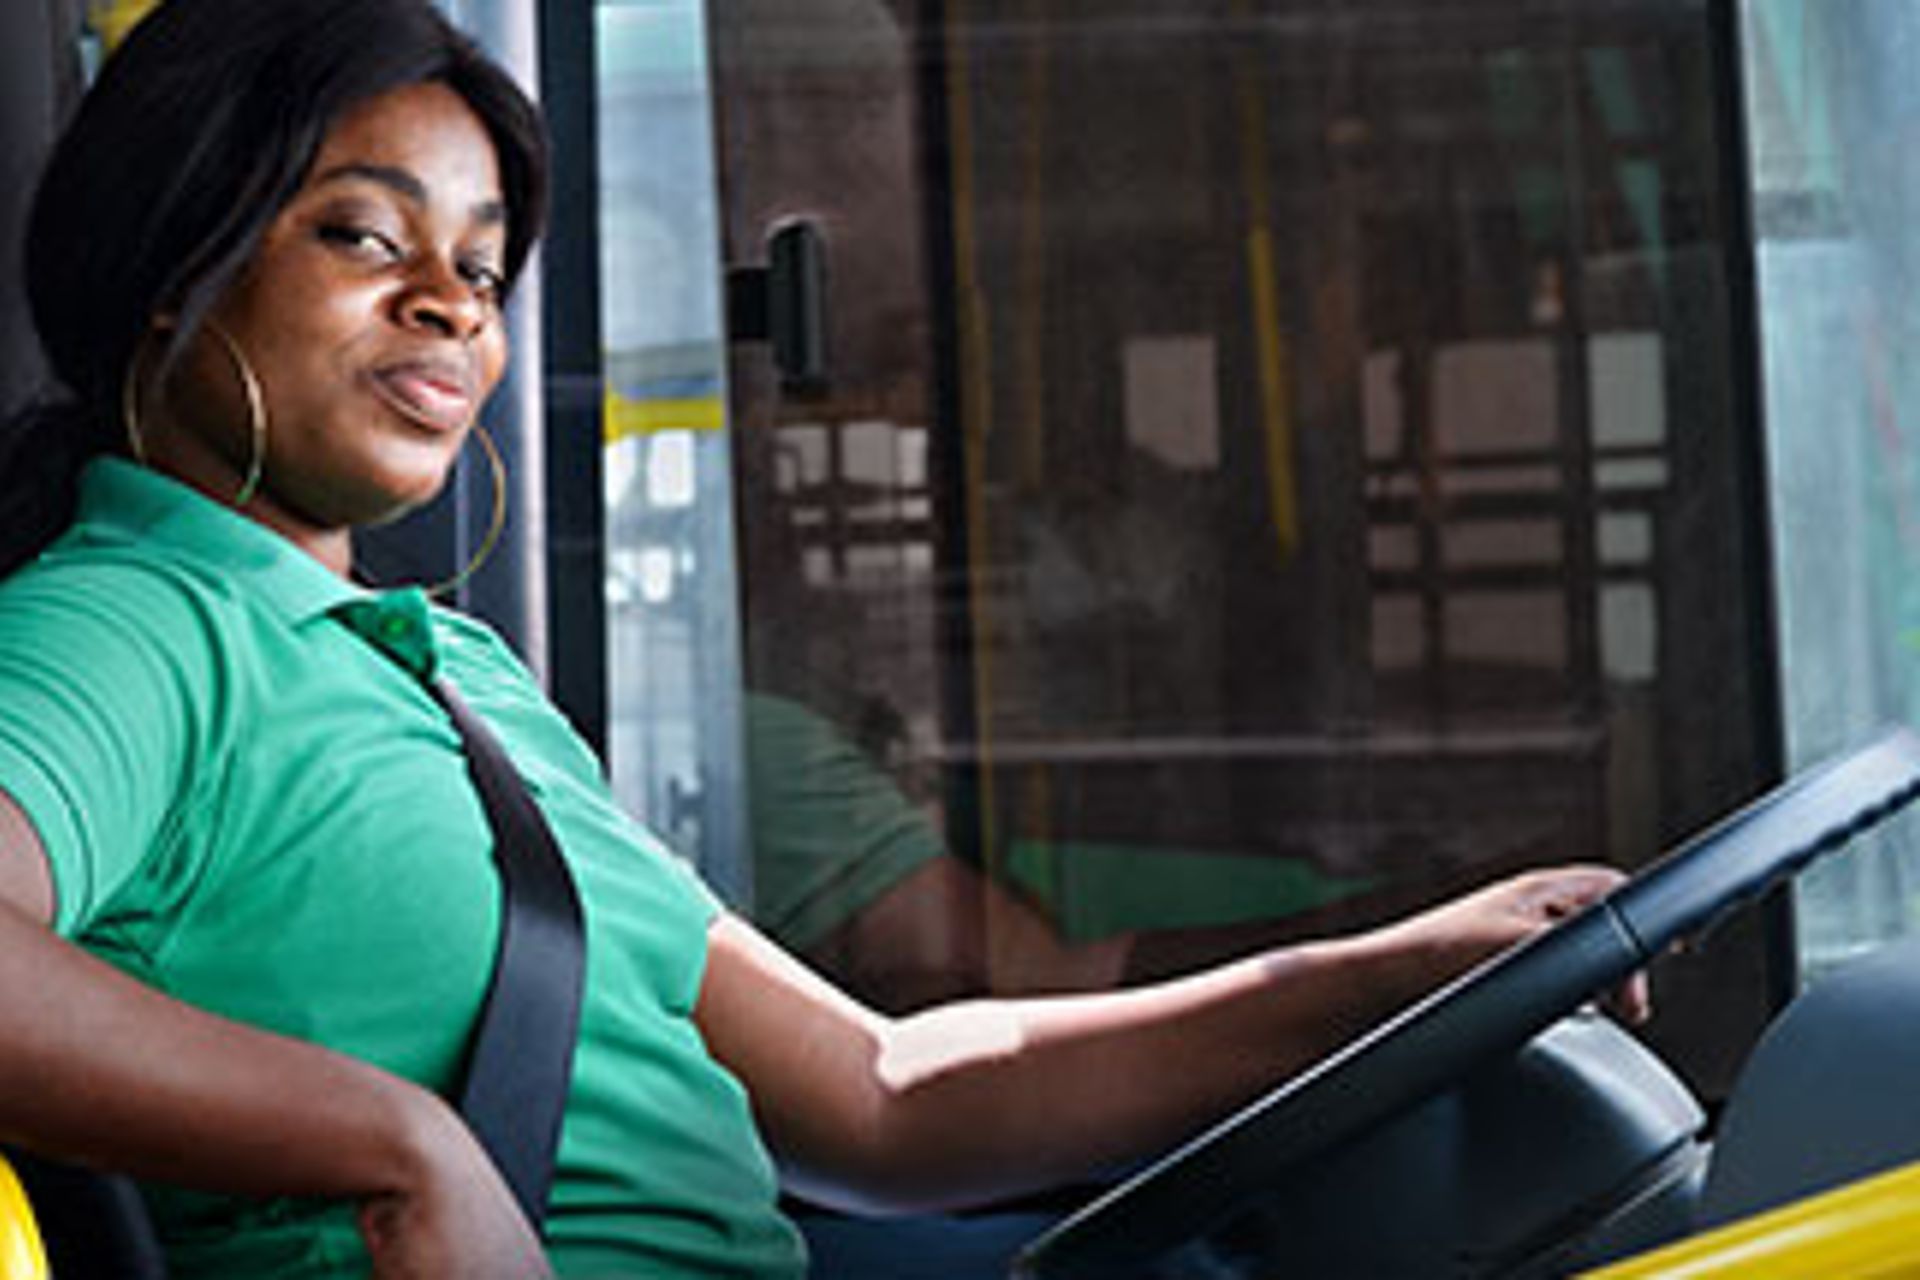 Im Westen Afrikas bilden Scania und die deutsche GIZ gemeinsam Frauen zu Bus- und Lkw-Fahrerinnen aus, um für Chancengleichheit zu sorgen. Drei von ihnen erzählen.
                 